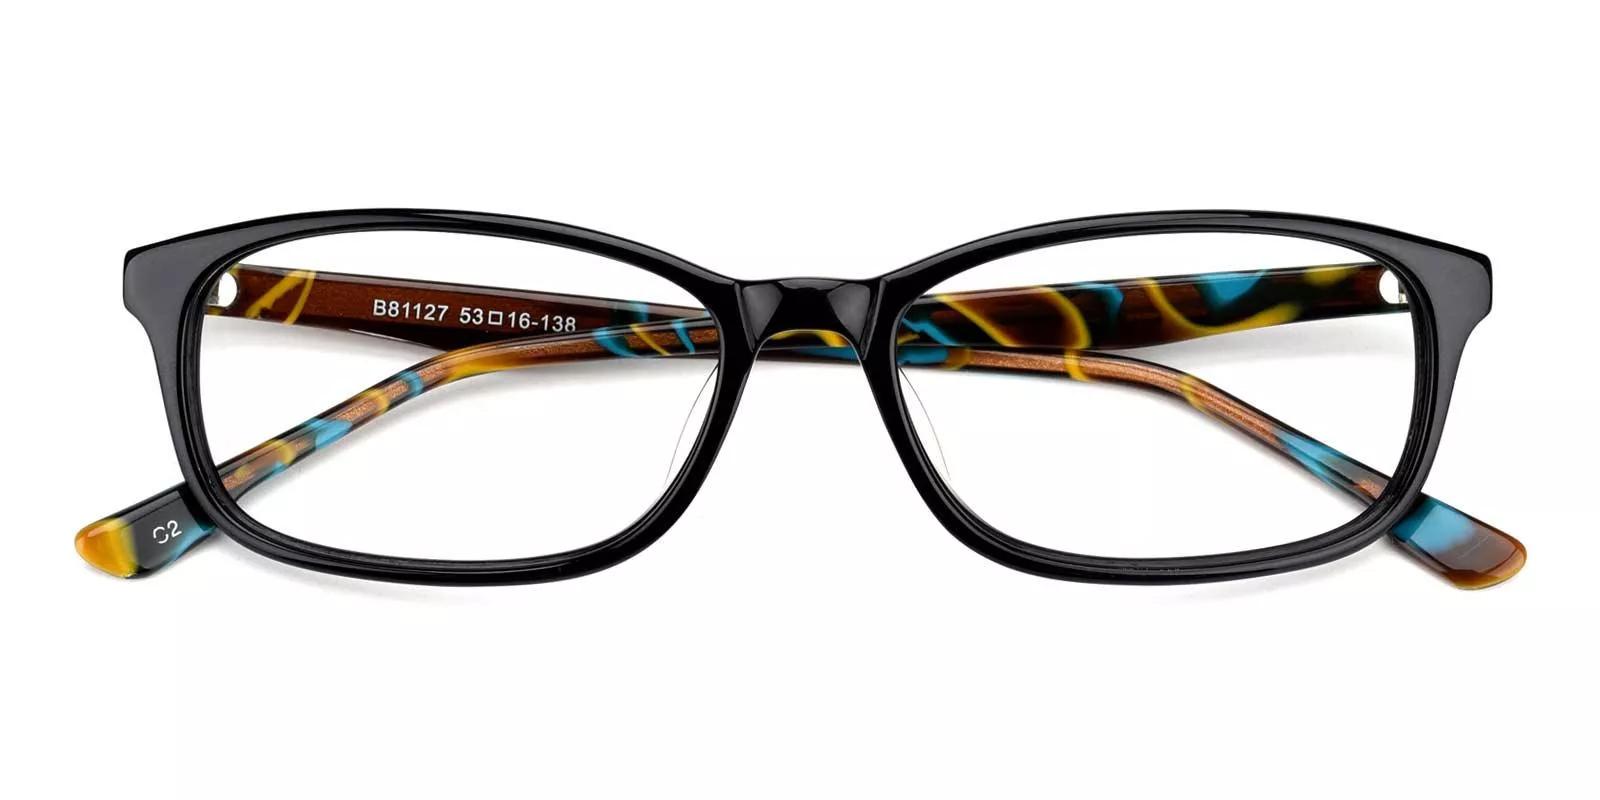 Tendant Black Acetate Eyeglasses , UniversalBridgeFit Frames from ABBE Glasses